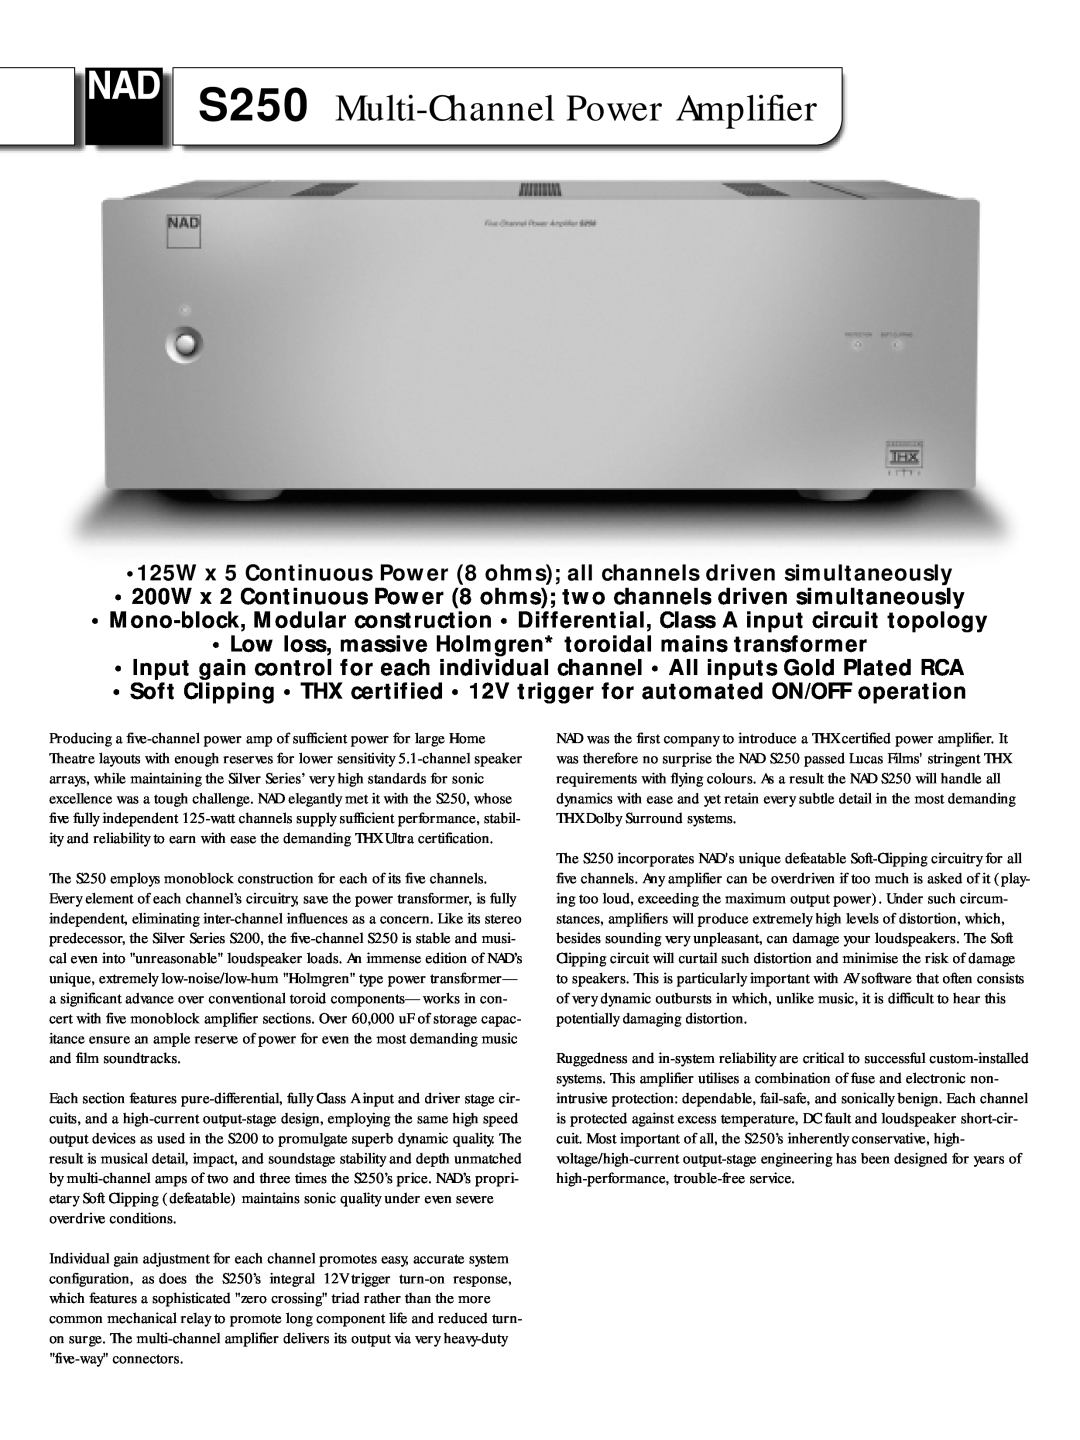 NAD manual S250 Multi-ChannelPower Amplifier 